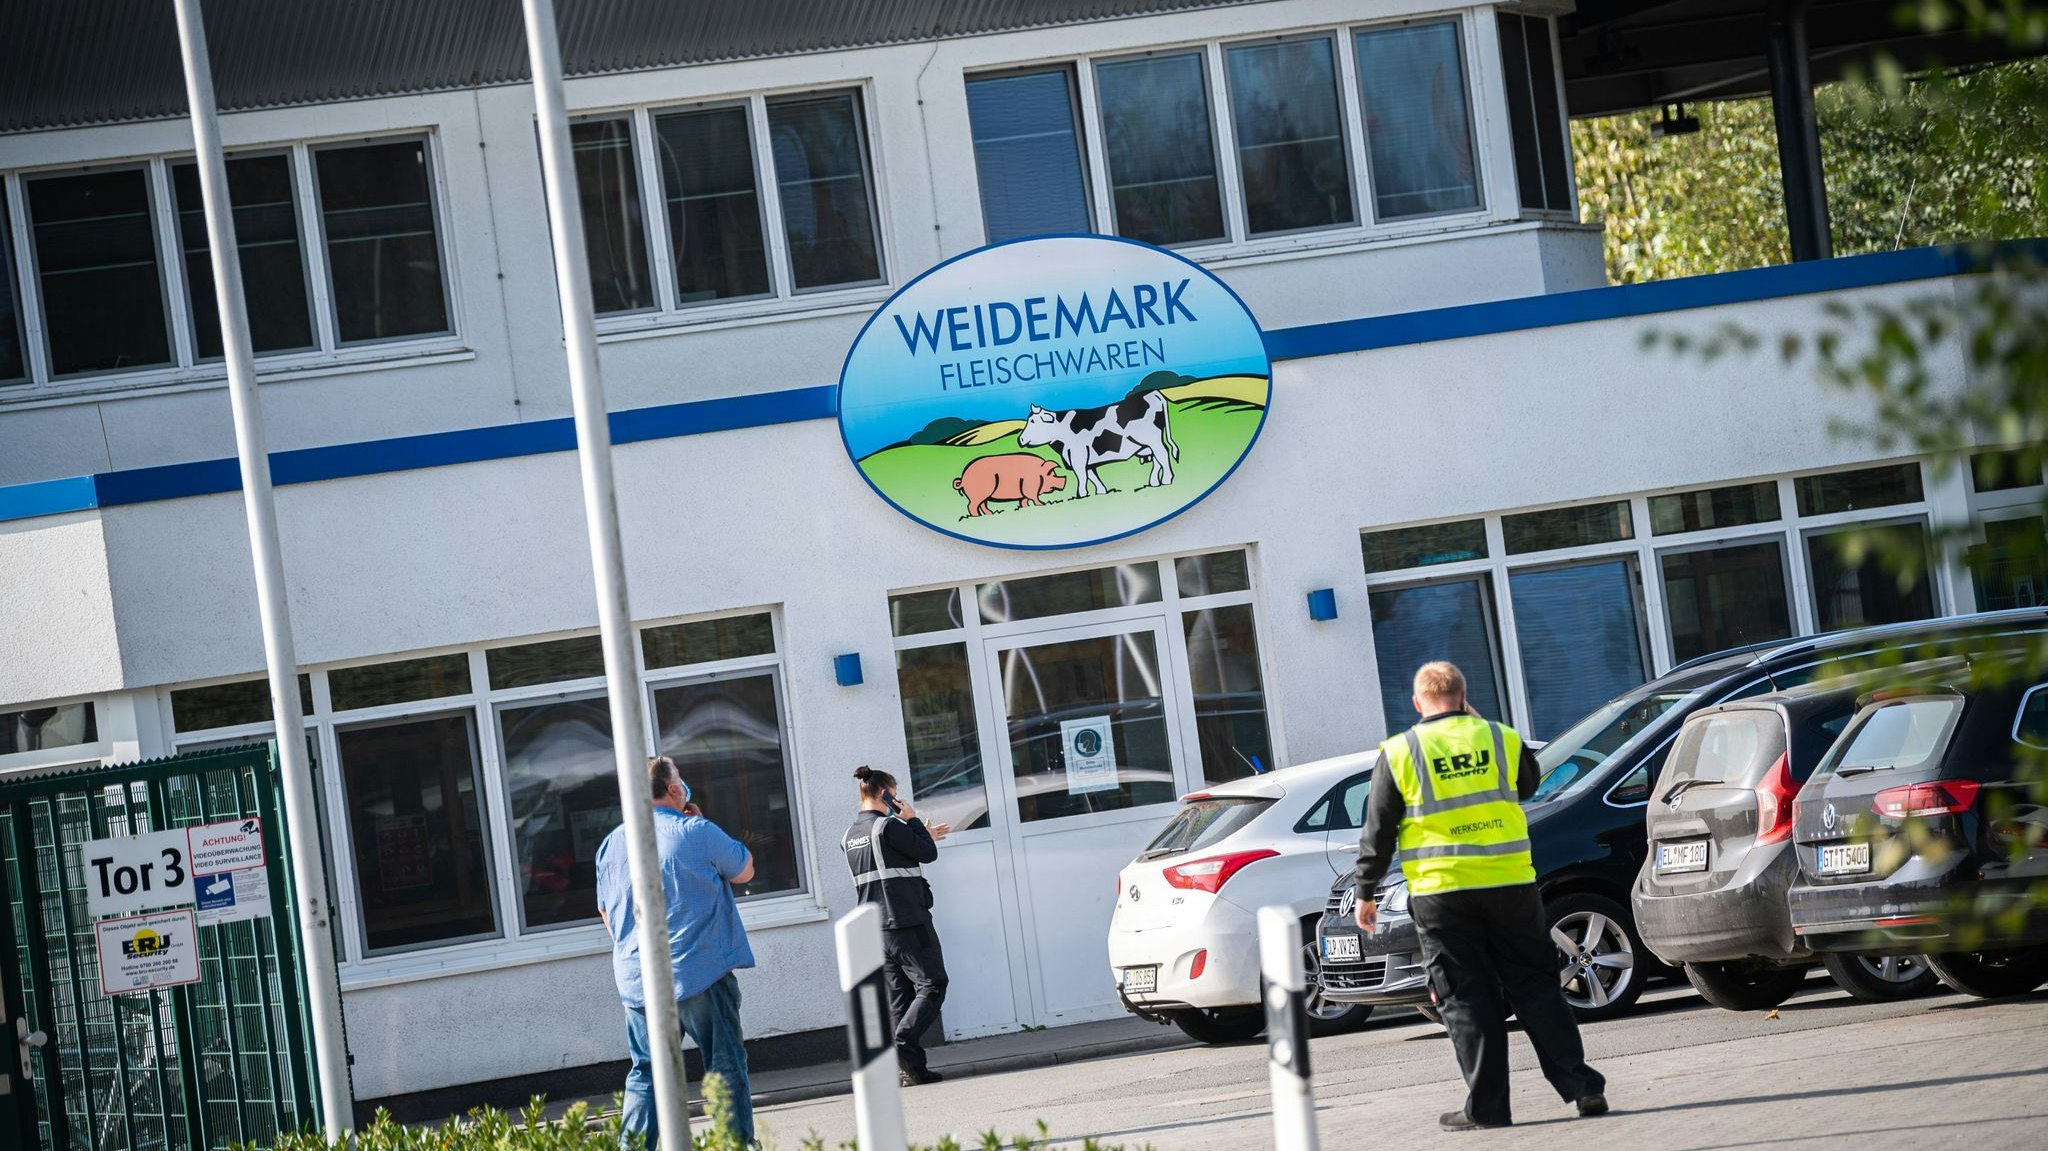 Die Tönnies-Tochterfirma Weidemark will gerichtlich gegen die vorübergehende Schließung vorgehen. Foto: dpa